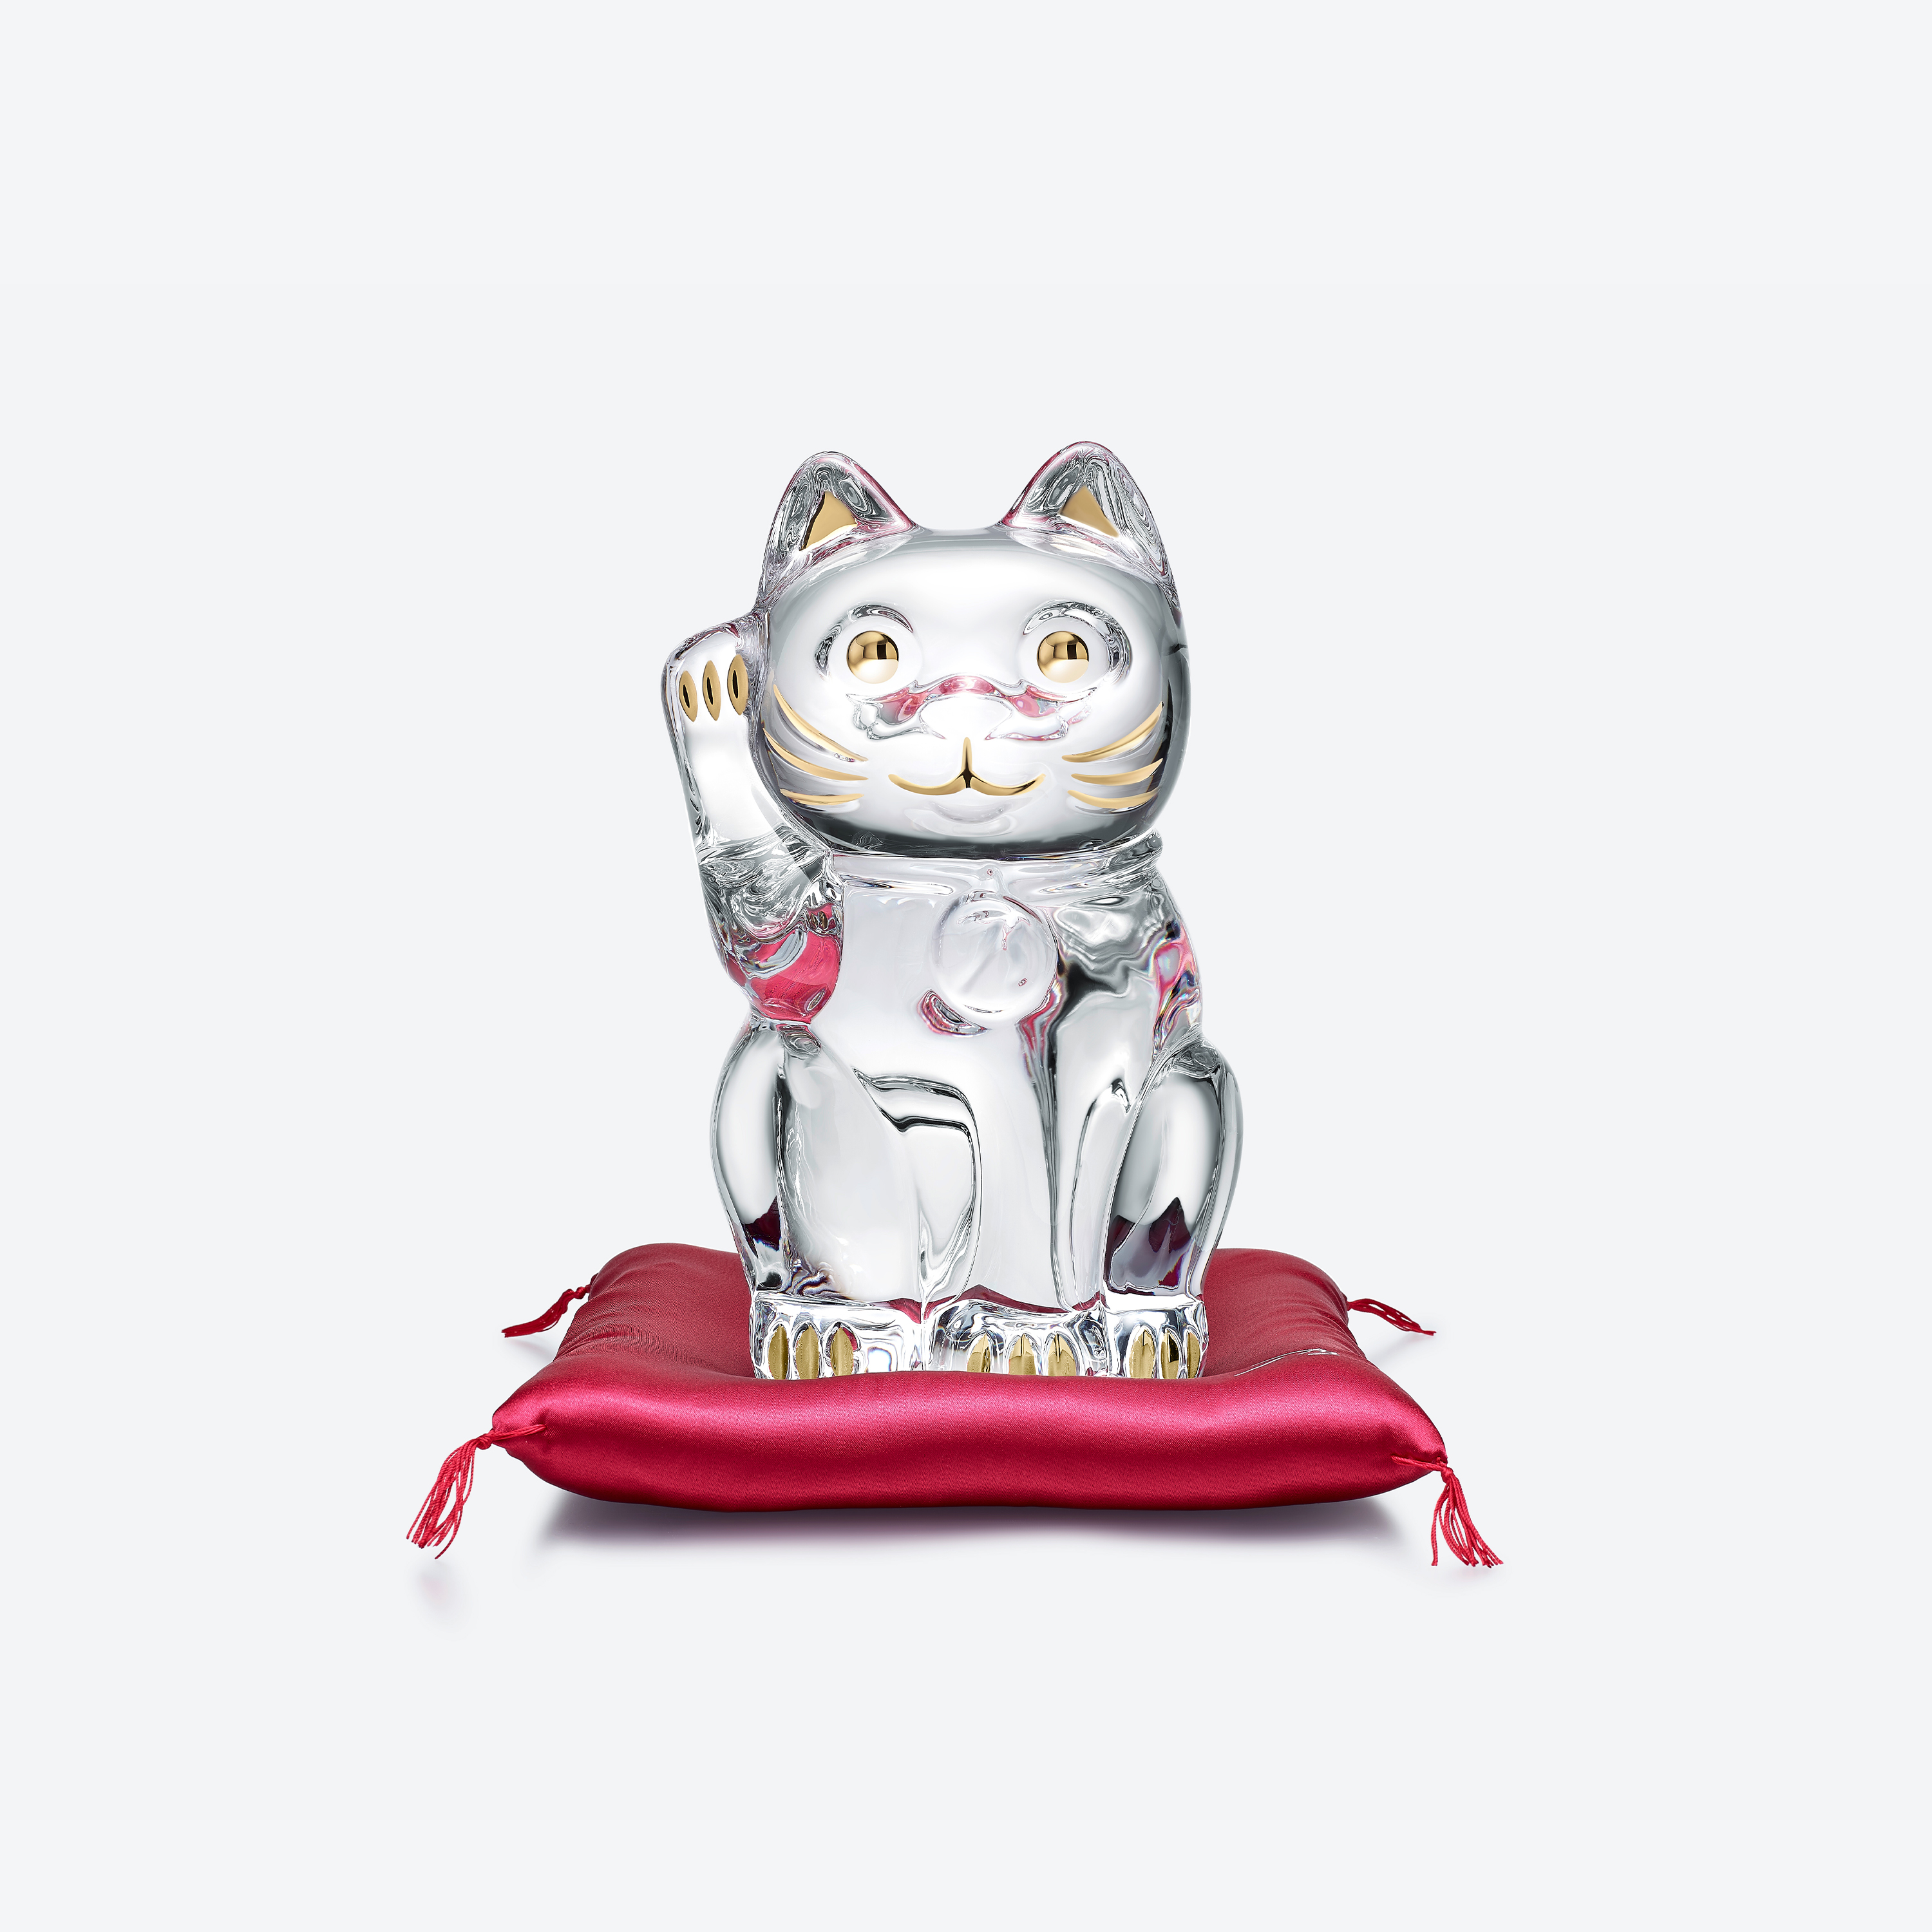 【お得人気SALE】(☆BM)Baccarat/バカラ クリスタルガラス(0113-⑥)まねき猫 招き猫 LUCKY CAT 動物 置物 オブジェ ラッキーキャット バカラ